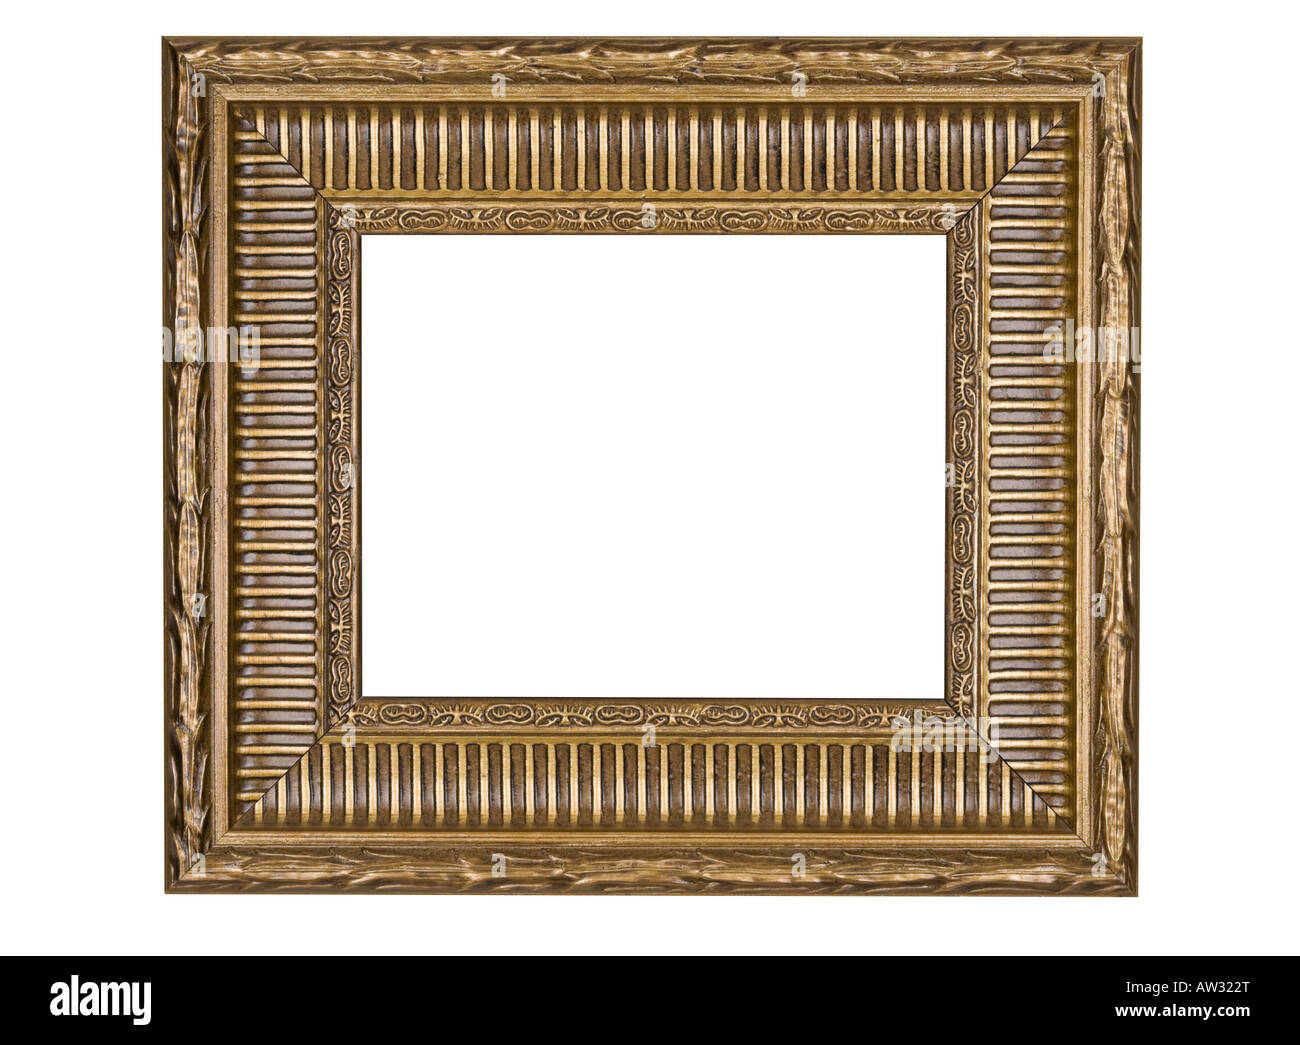 Bilderrahmen in große Art-déco-gerippt, Muster, weißen Hintergrund isoliert  Stockfotografie - Alamy